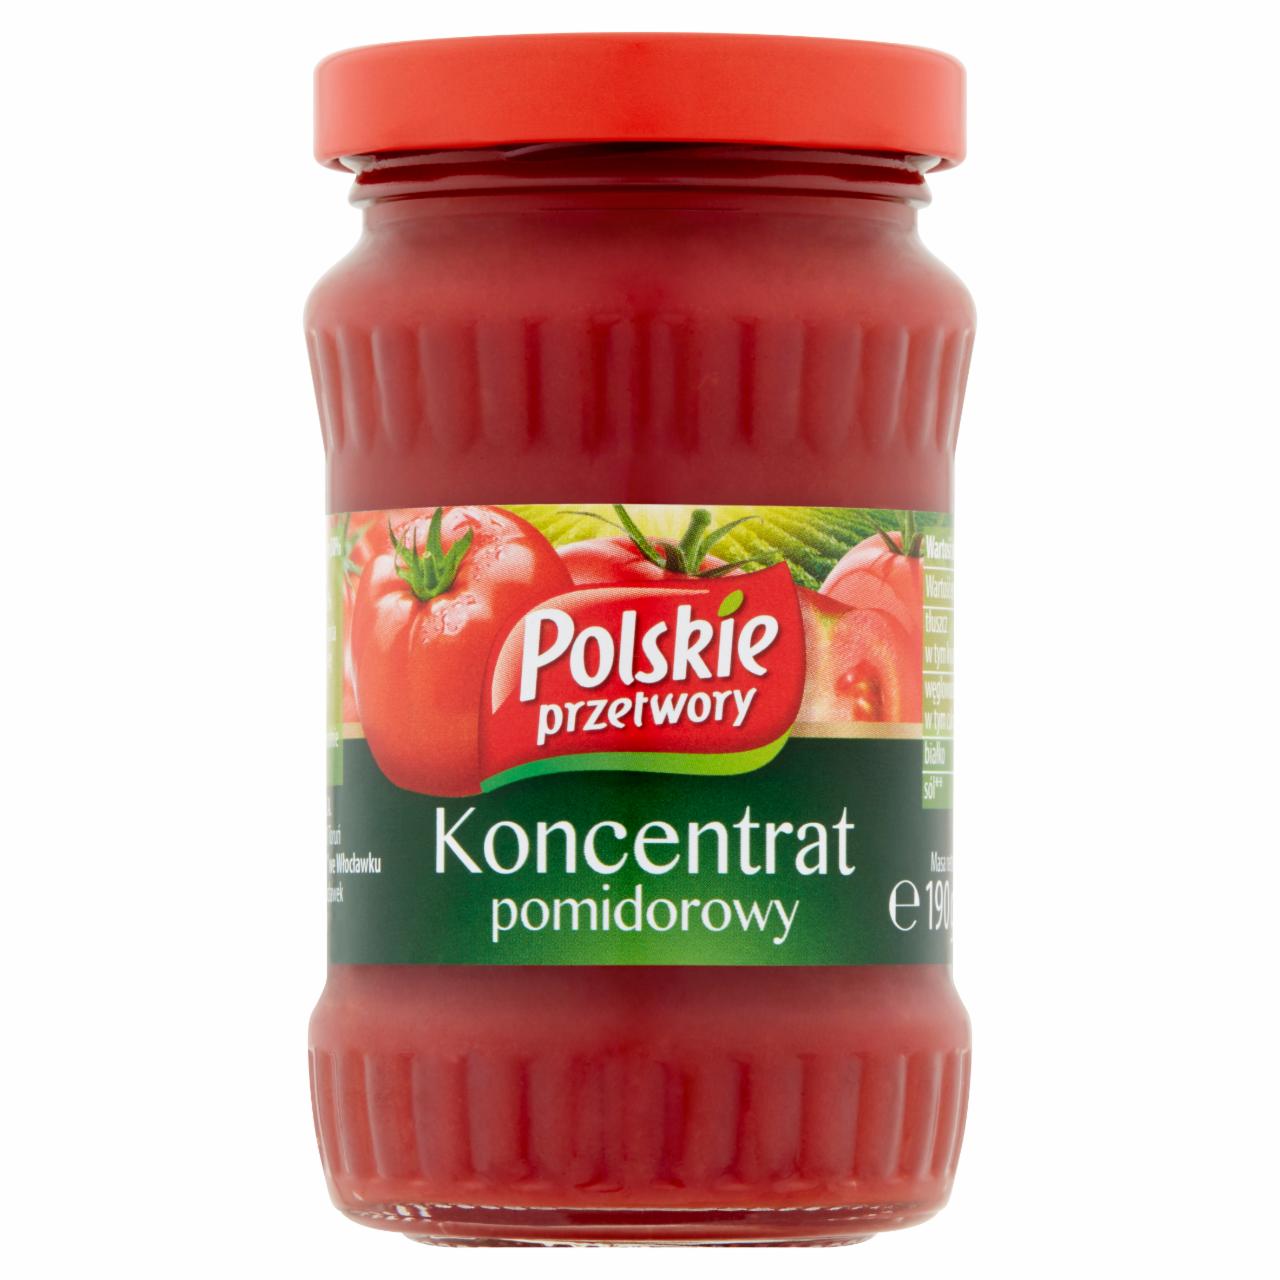 Zdjęcia - Polskie przetwory Koncentrat pomidorowy 190 g